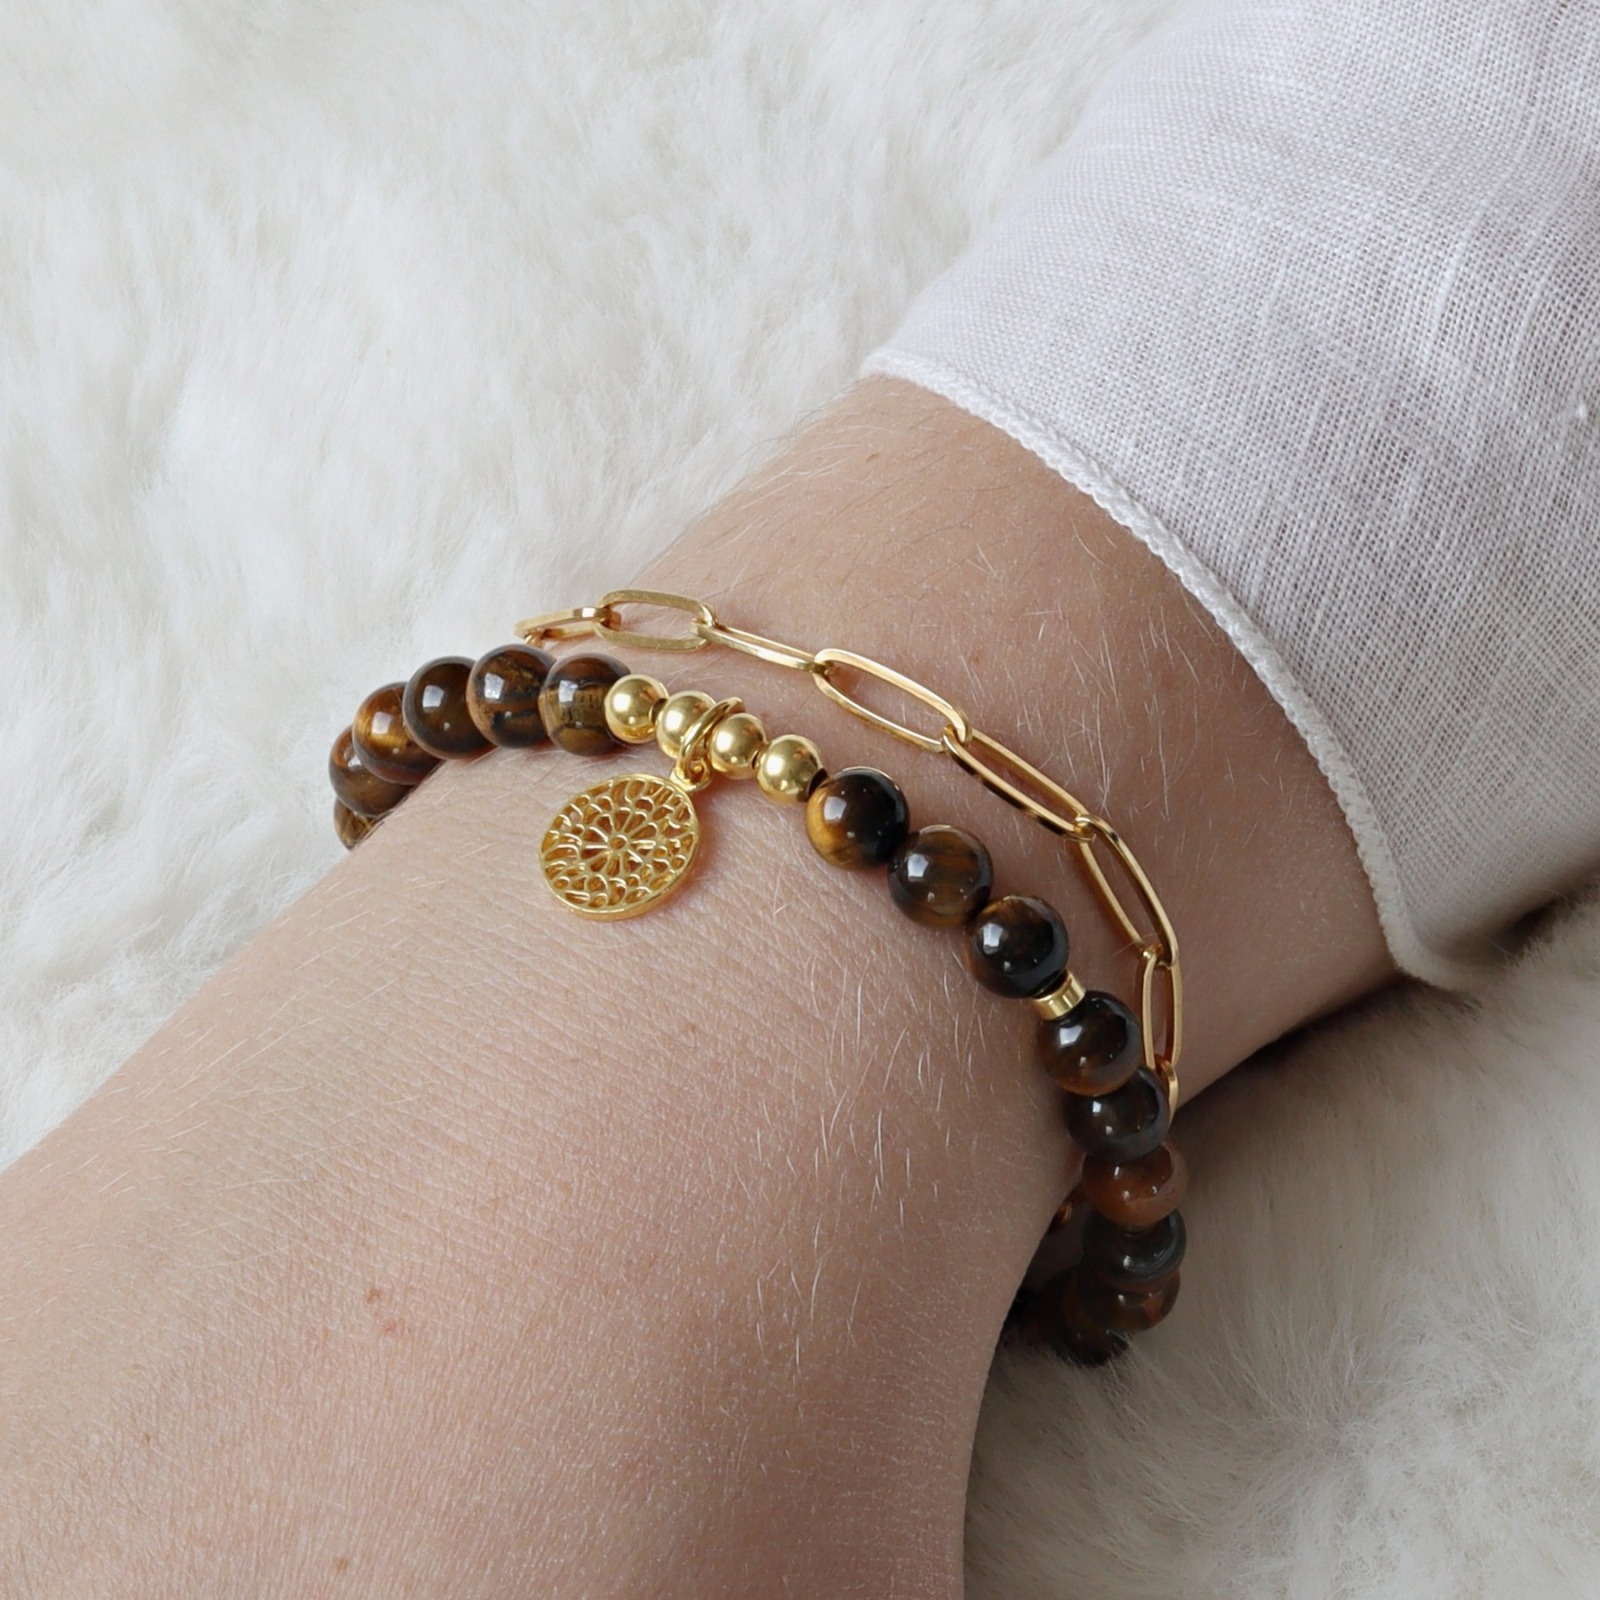 Armband Tigerauge mit Mandala 725er Silber oder vergoldet perfektes Geschenk für Frauen 6